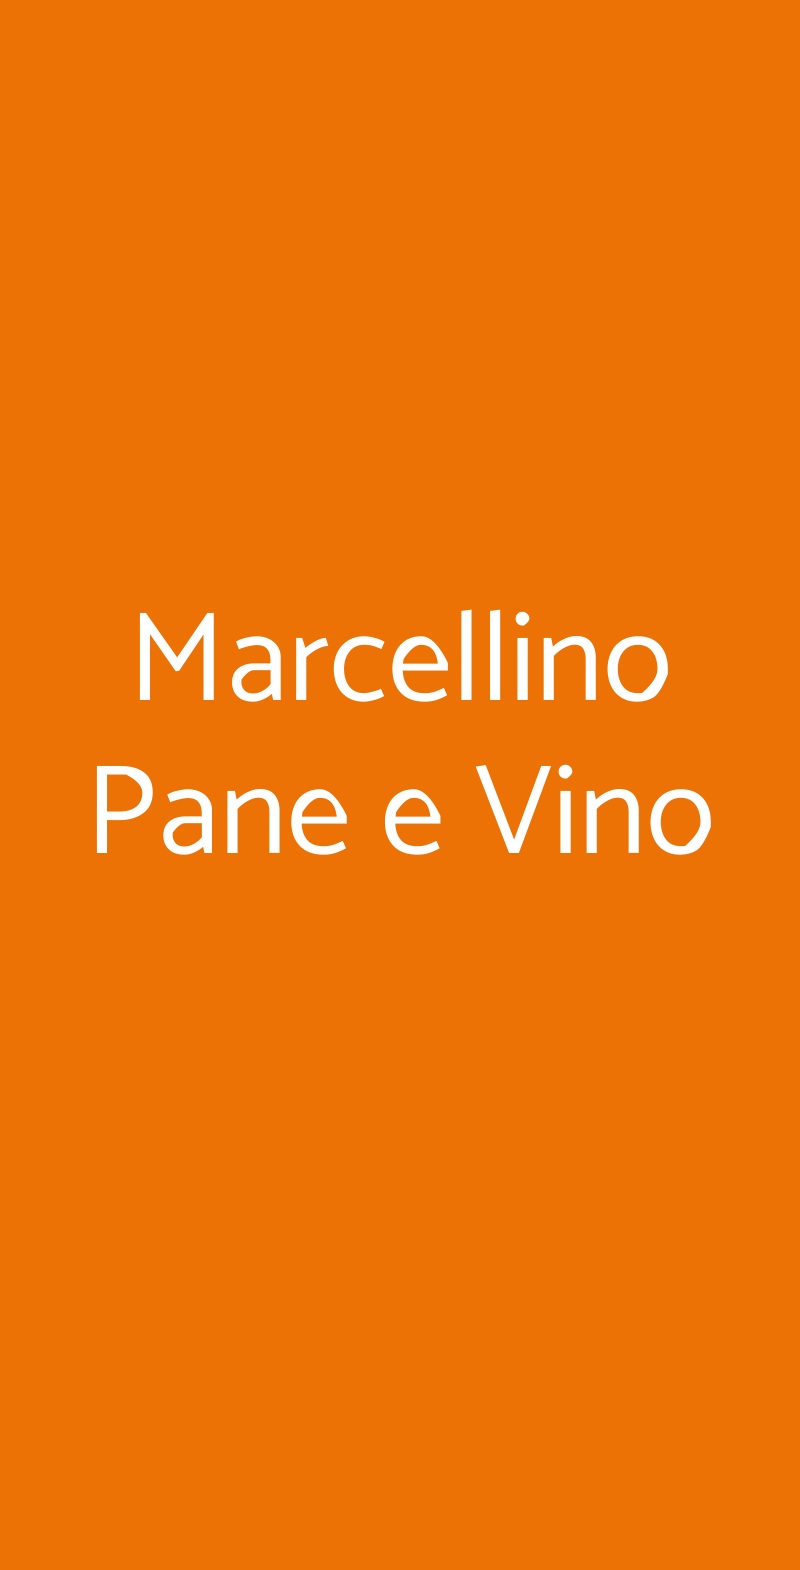 Marcellino Pane e Vino Milano menù 1 pagina